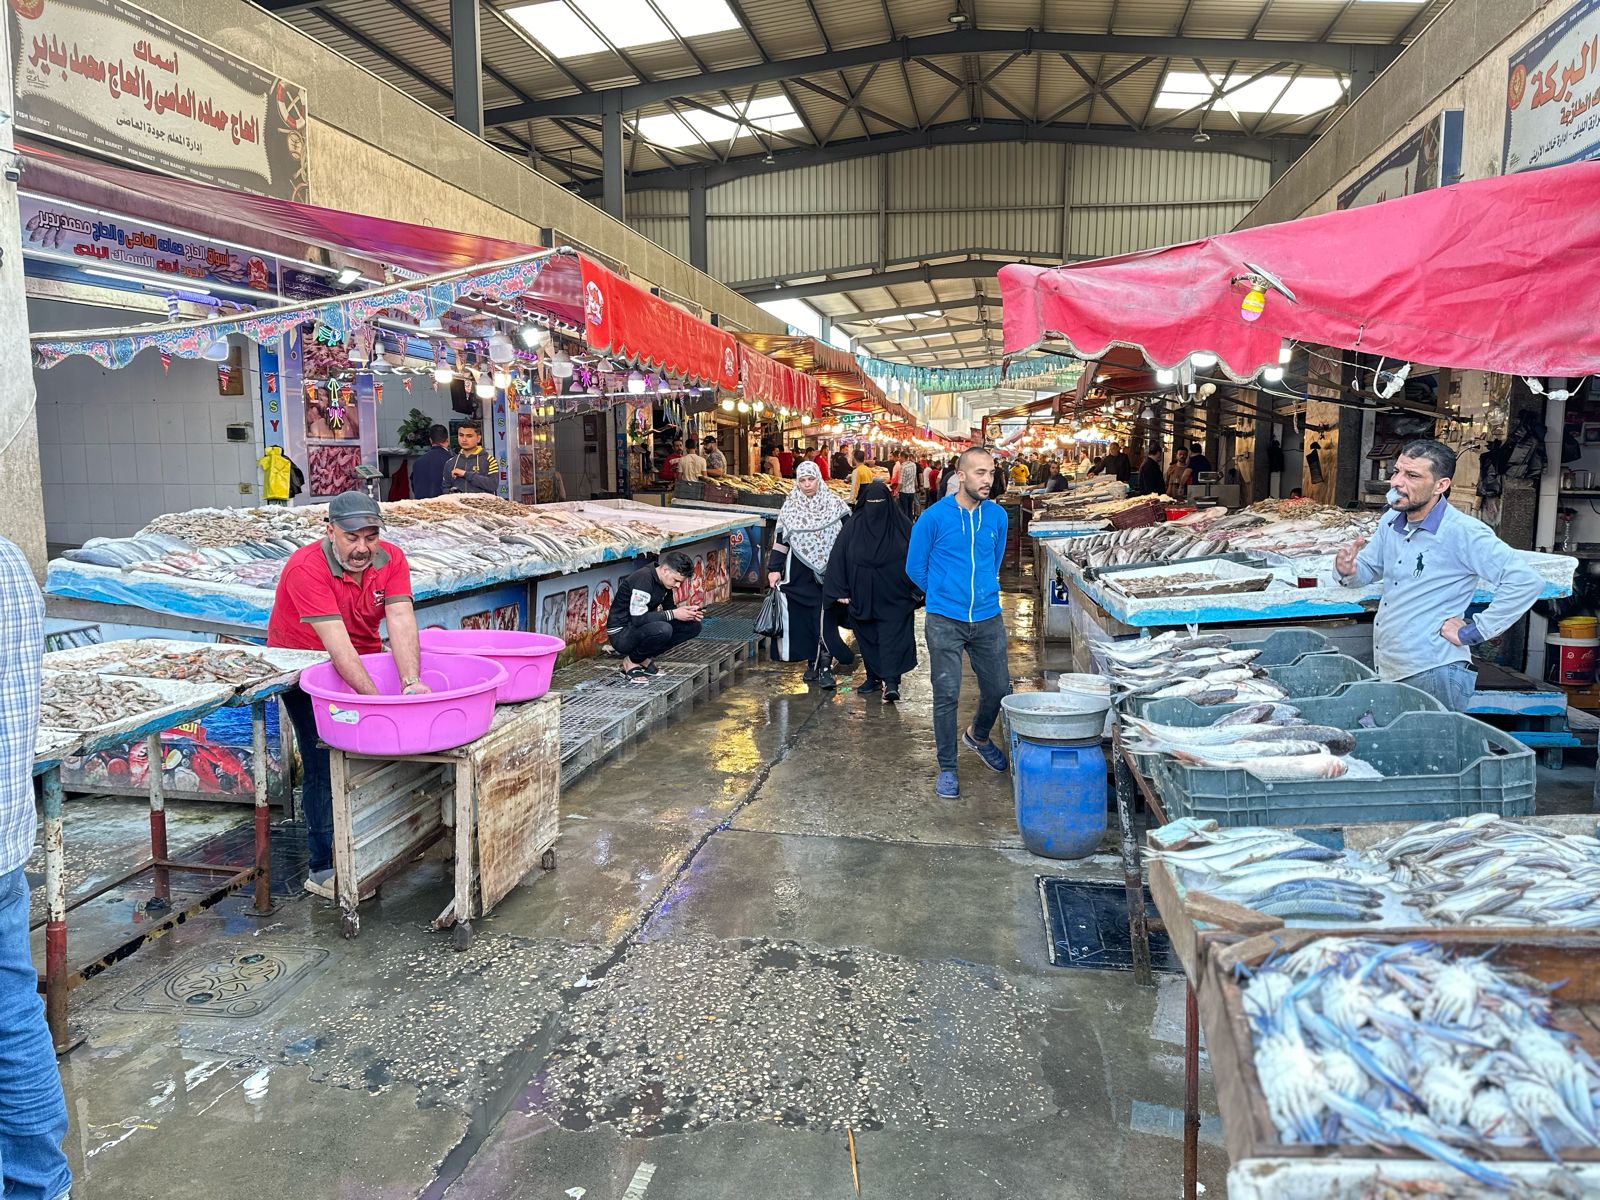 سوق بورسعيد للأسماك